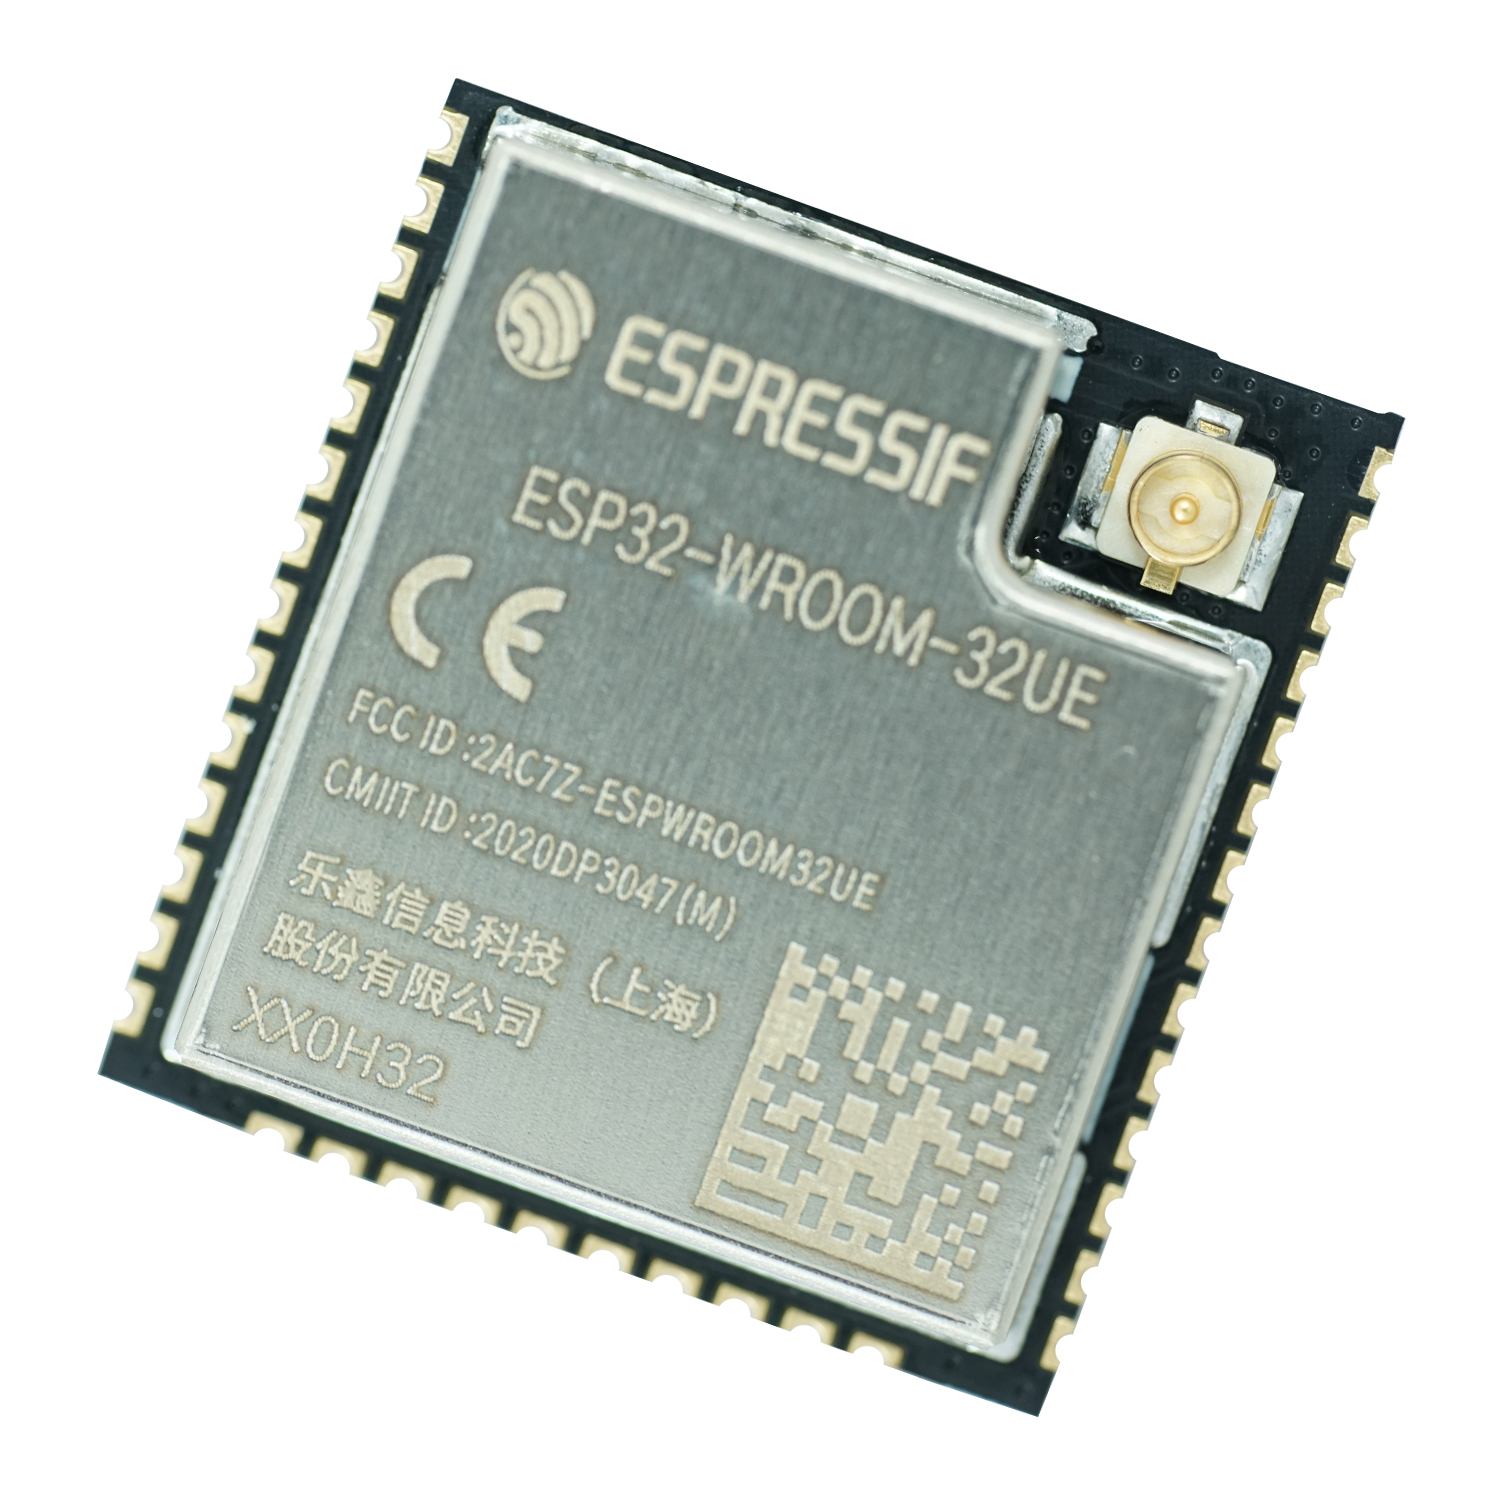 ESP32-WROOM-32UE - WI-FI/BT/BLE Module - Espressif Systems - 4MB Flash –  Grid Connect